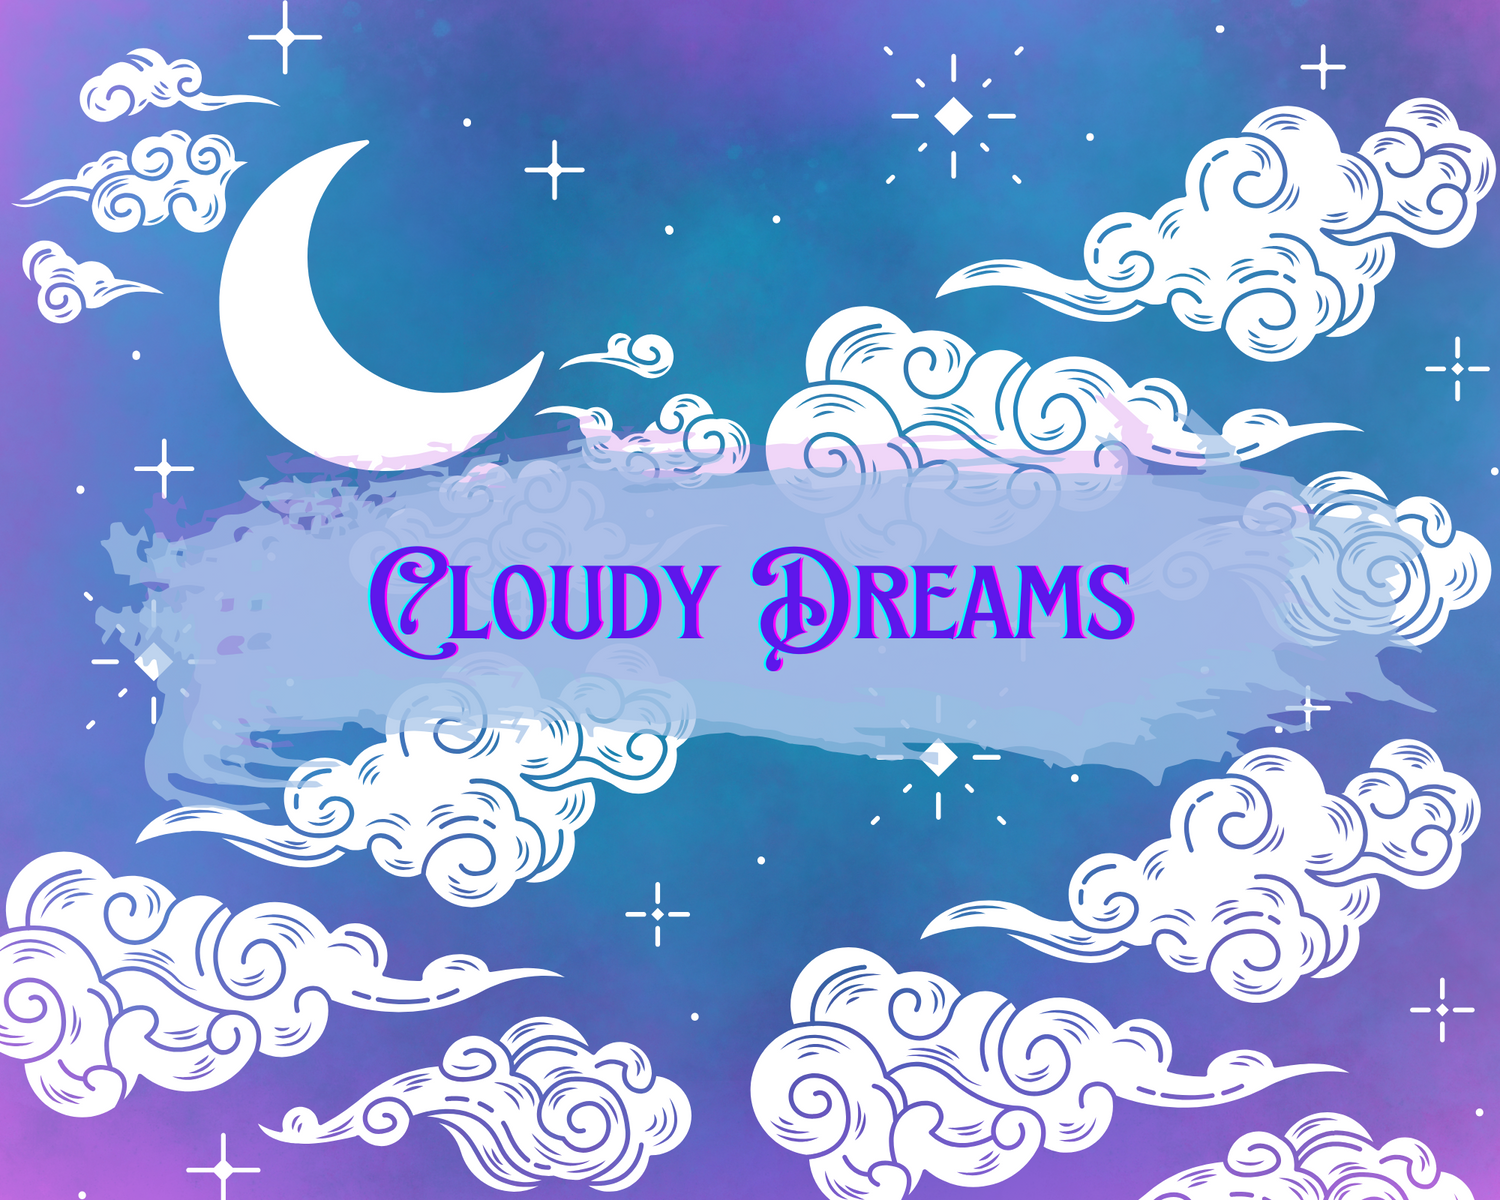 Cloudy Dreams